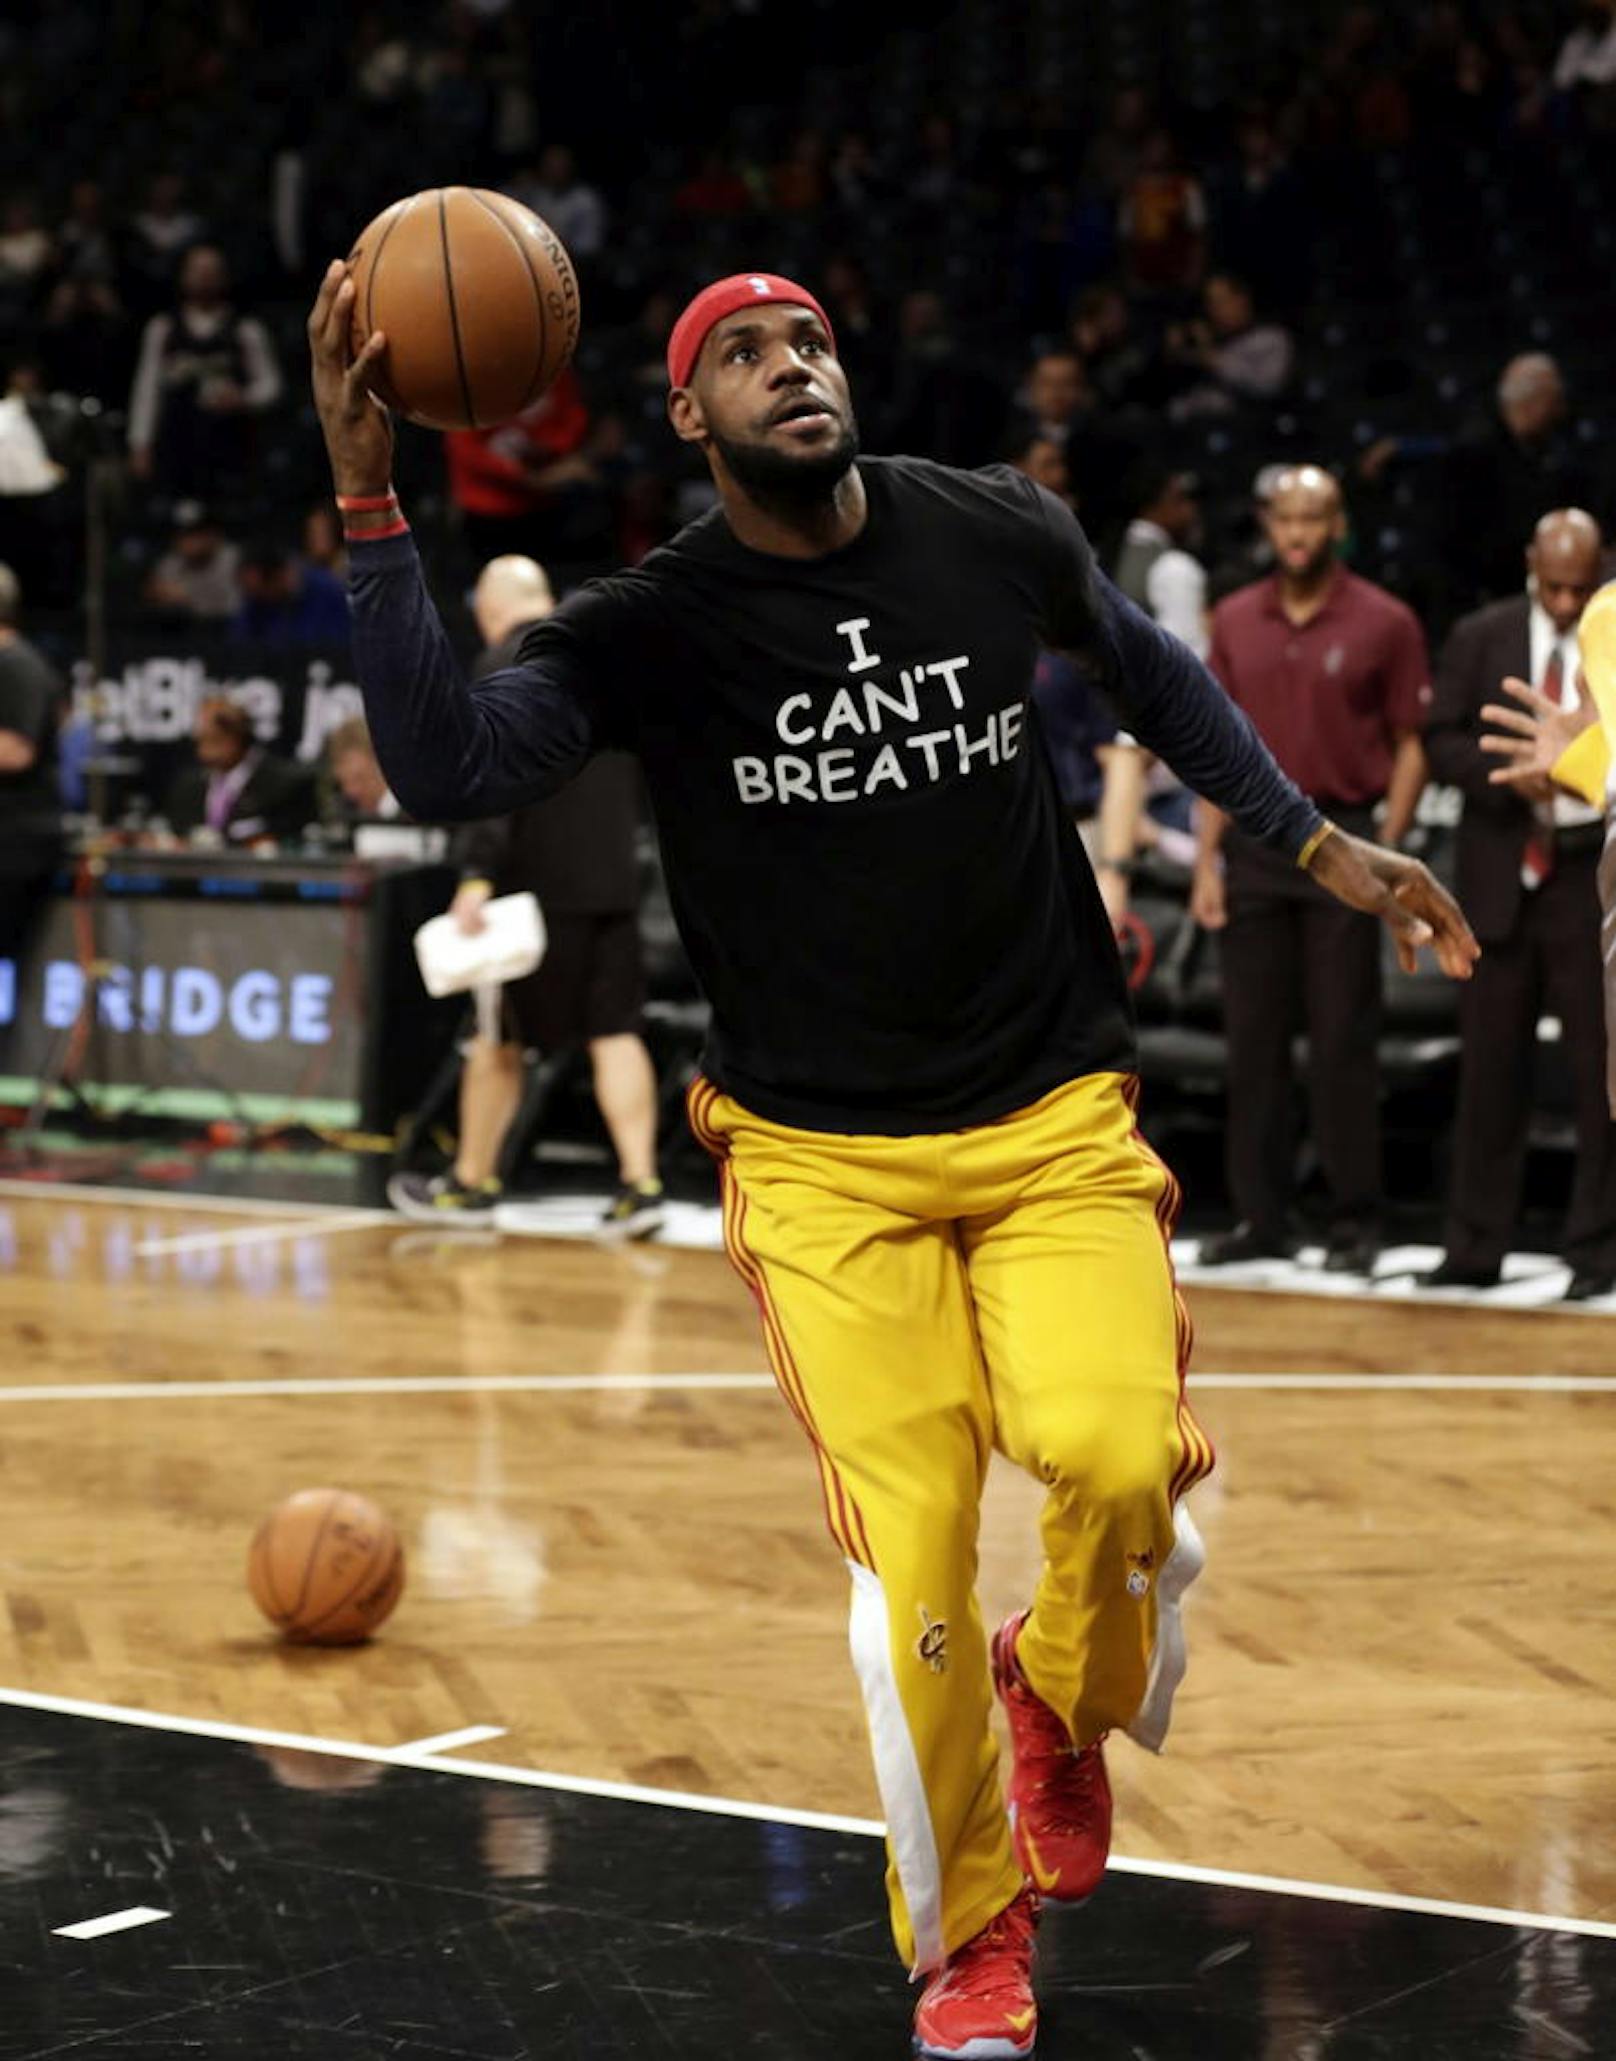 NBA-Superstar LeBron James trug 2014 ein Trikot mit der Aufschrift "I can?t breathe". Damit machte der Basketball-Superstar auf den Tod eines Afroamerikaners aufmerksam, der durch den Würgegriff eines Polizisten verstarb. 